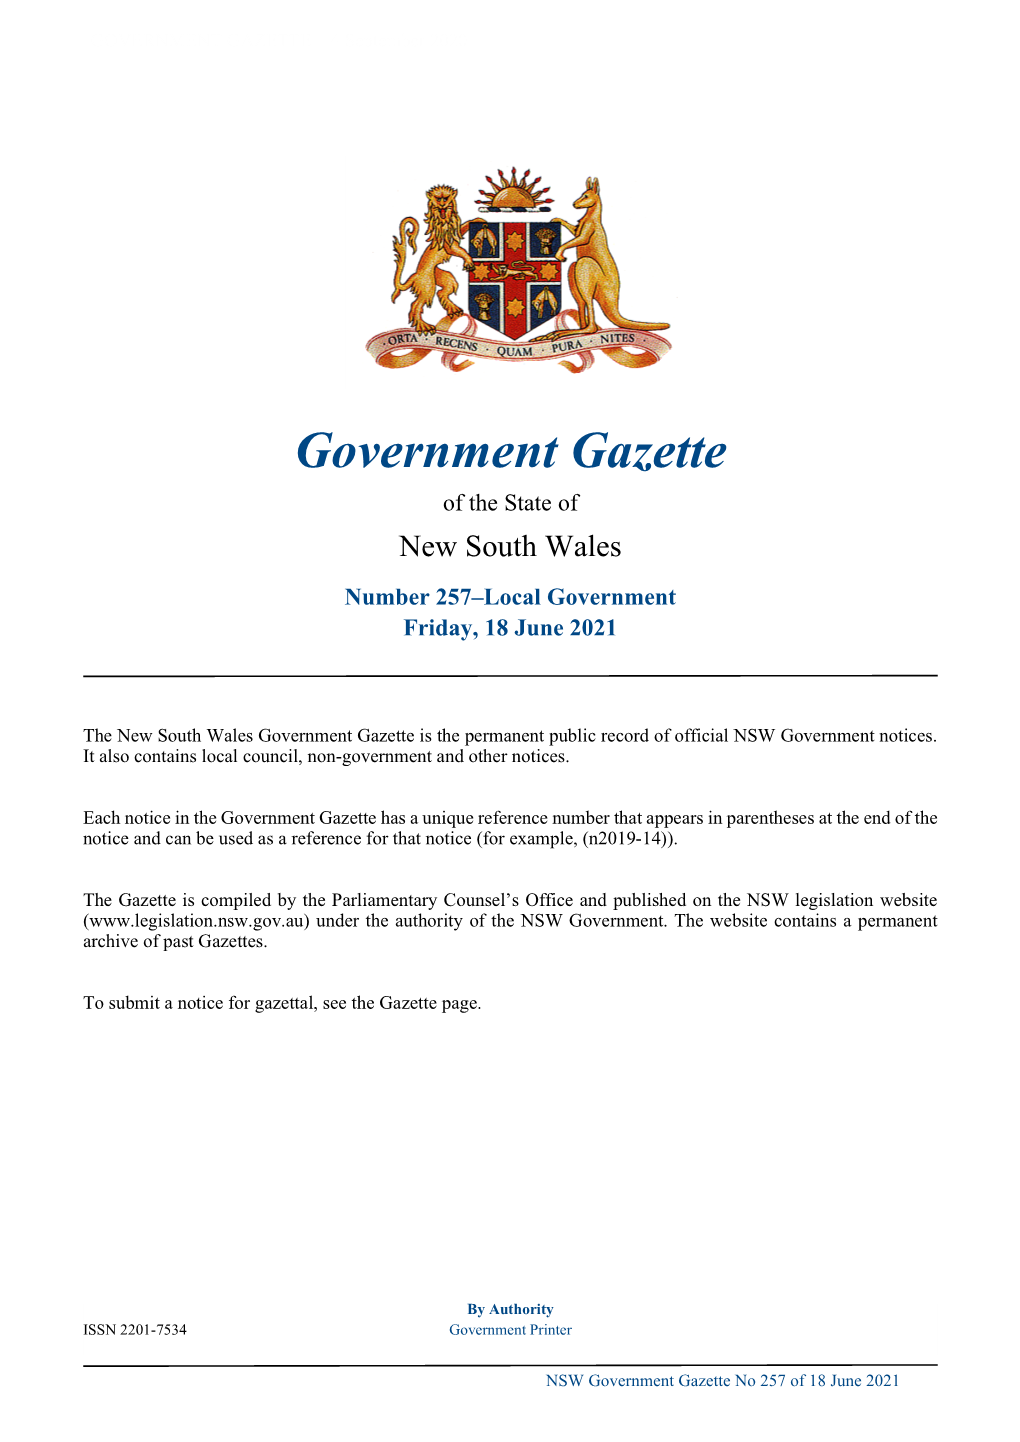 Government Gazette No 257 of Friday 18 June 2021